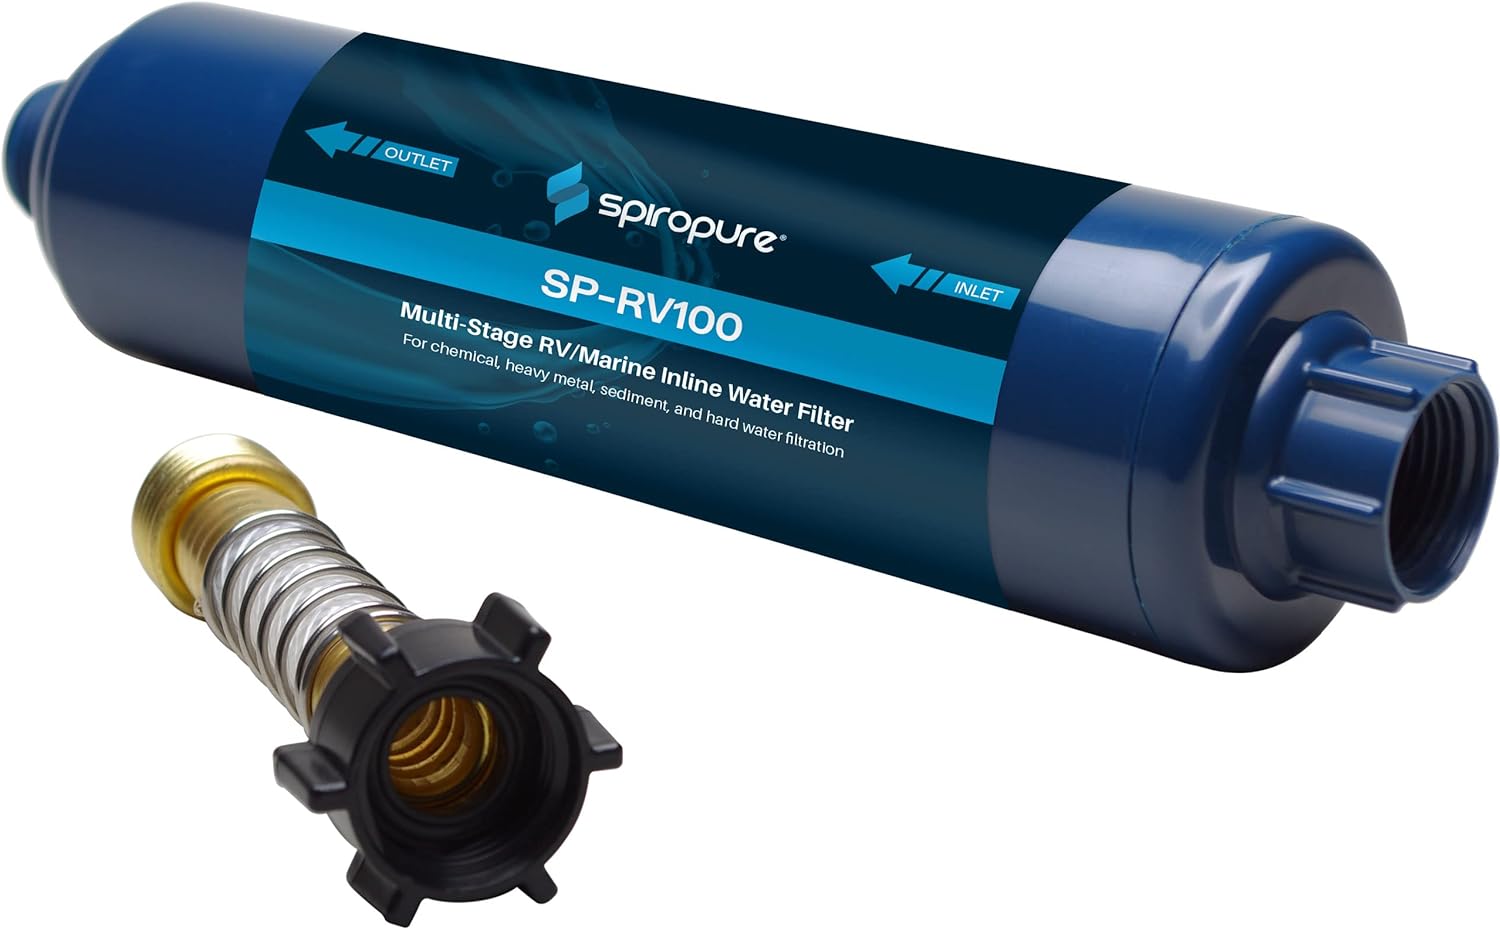 SpiroPure SP-RV100 Multi-Stage RV/Marine Inline Water Filter